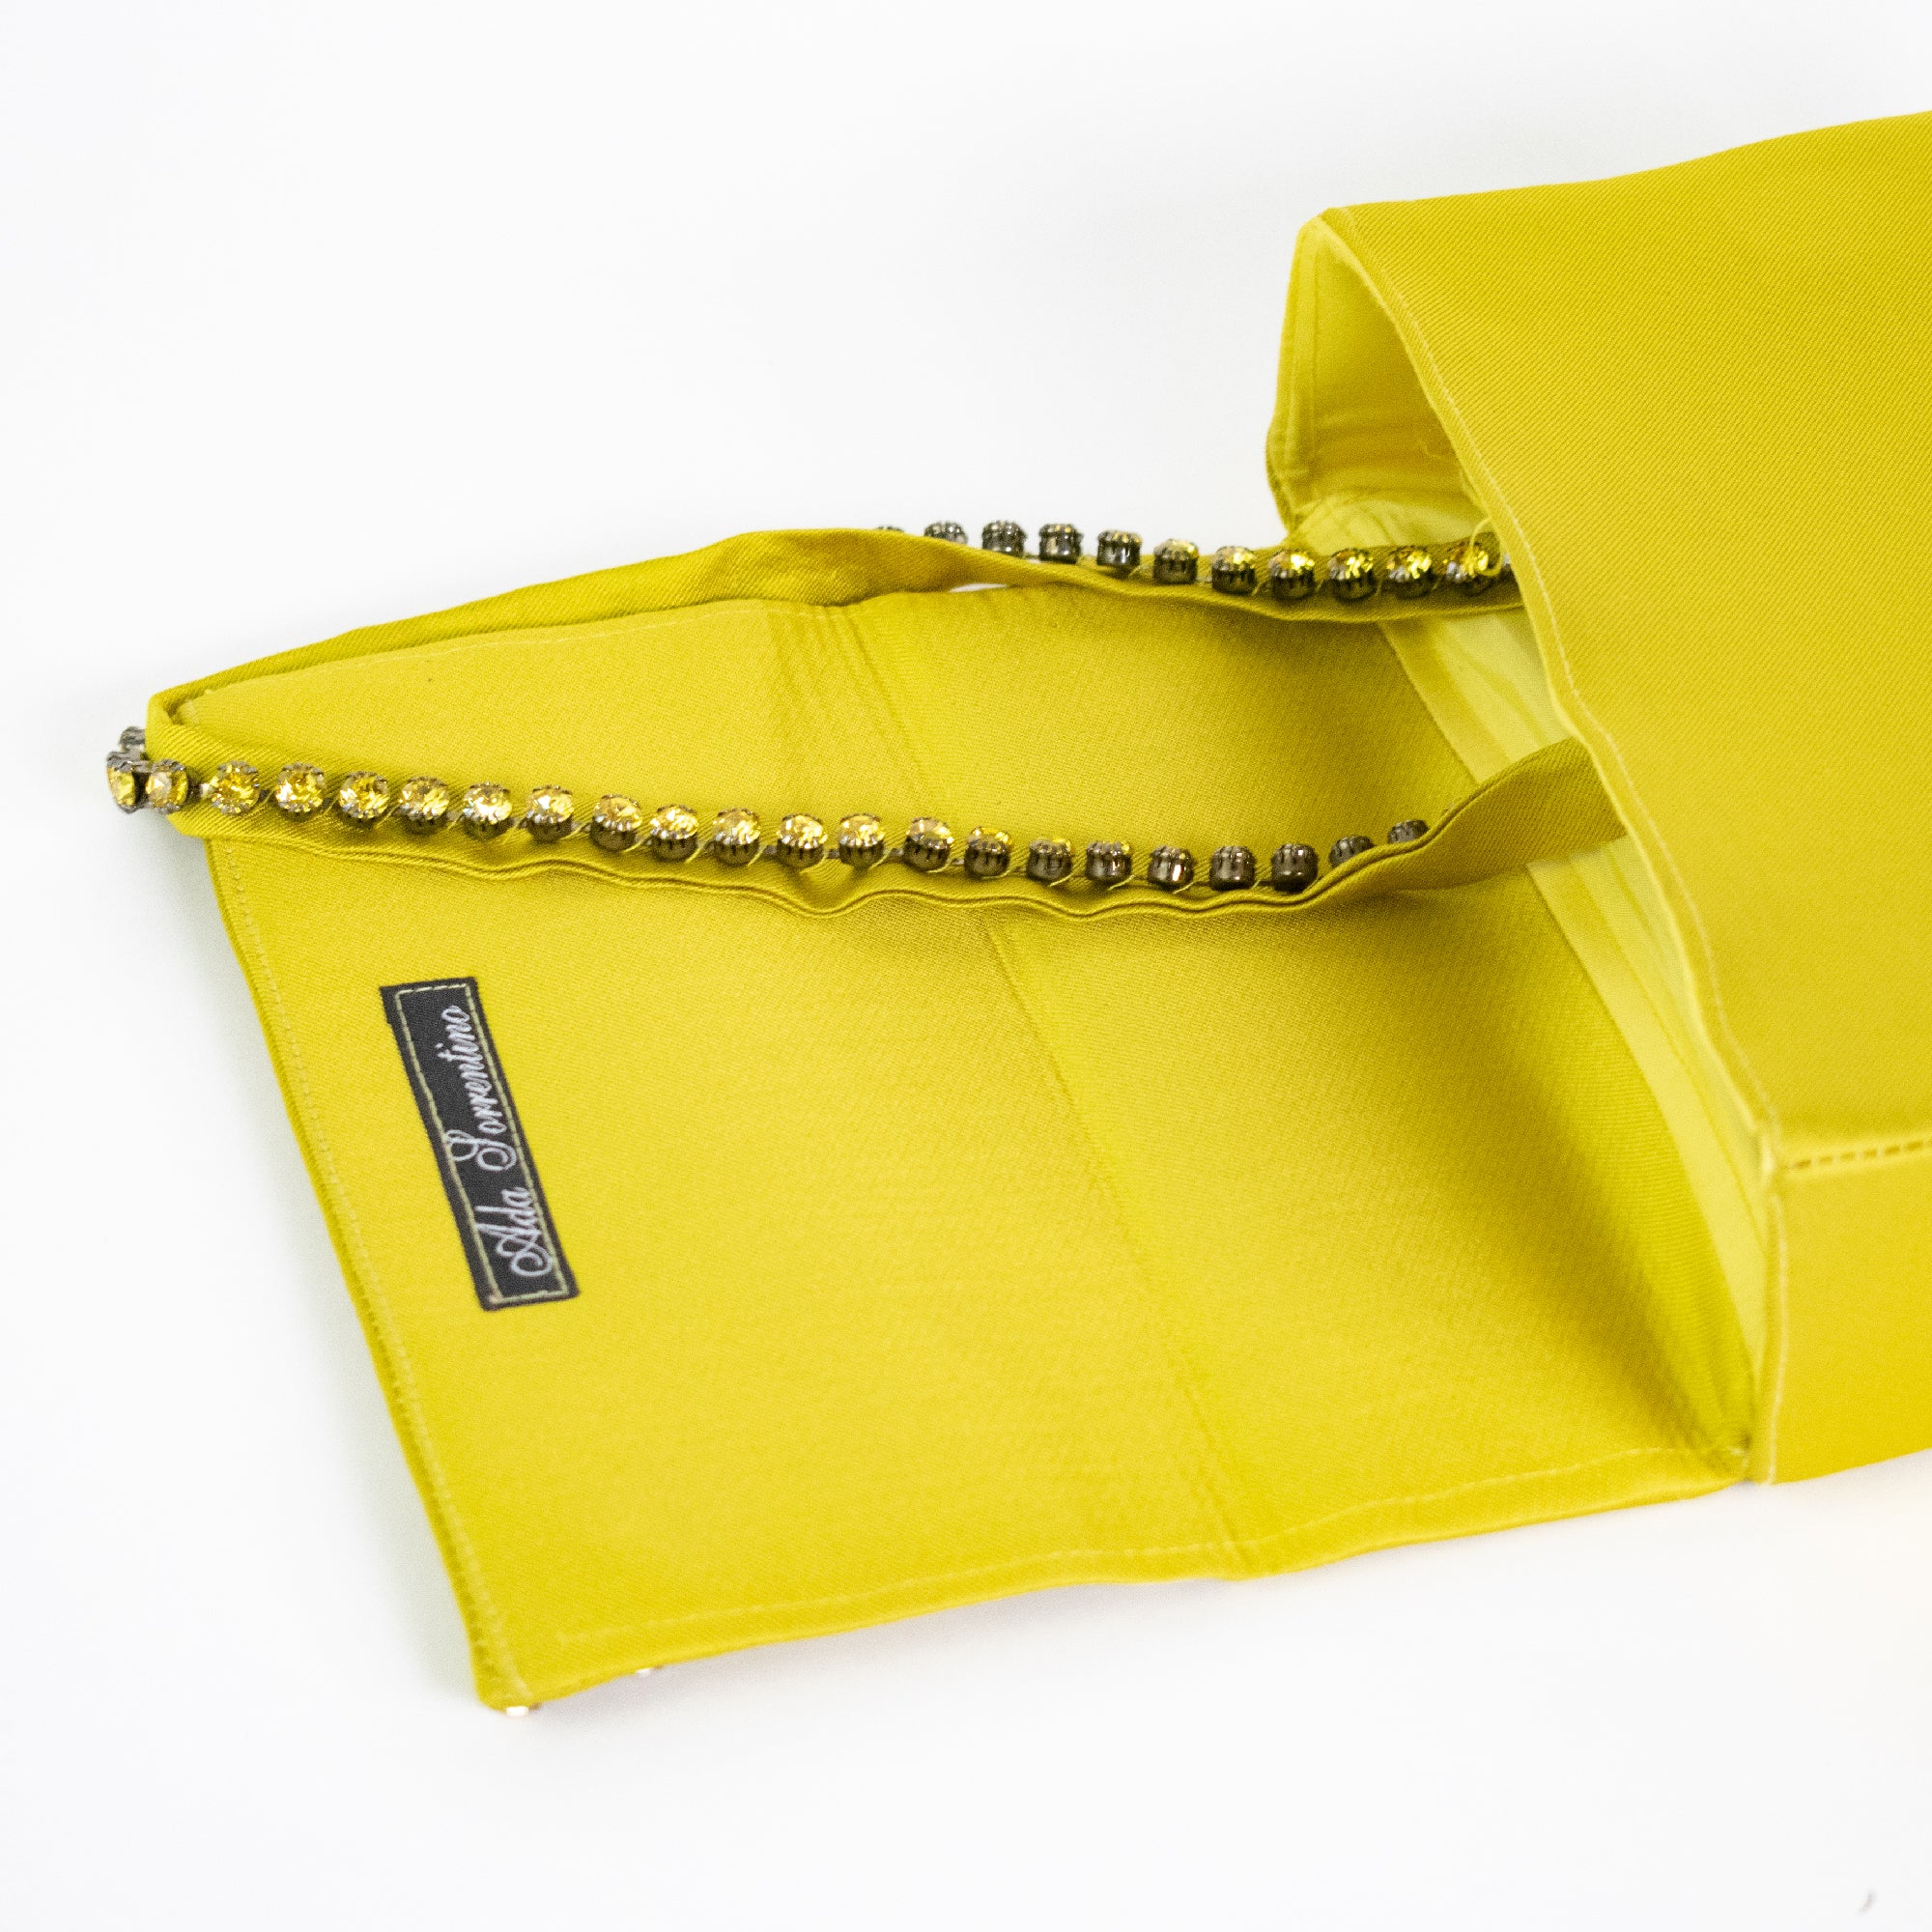 Yellow clutch bag with Swarovski